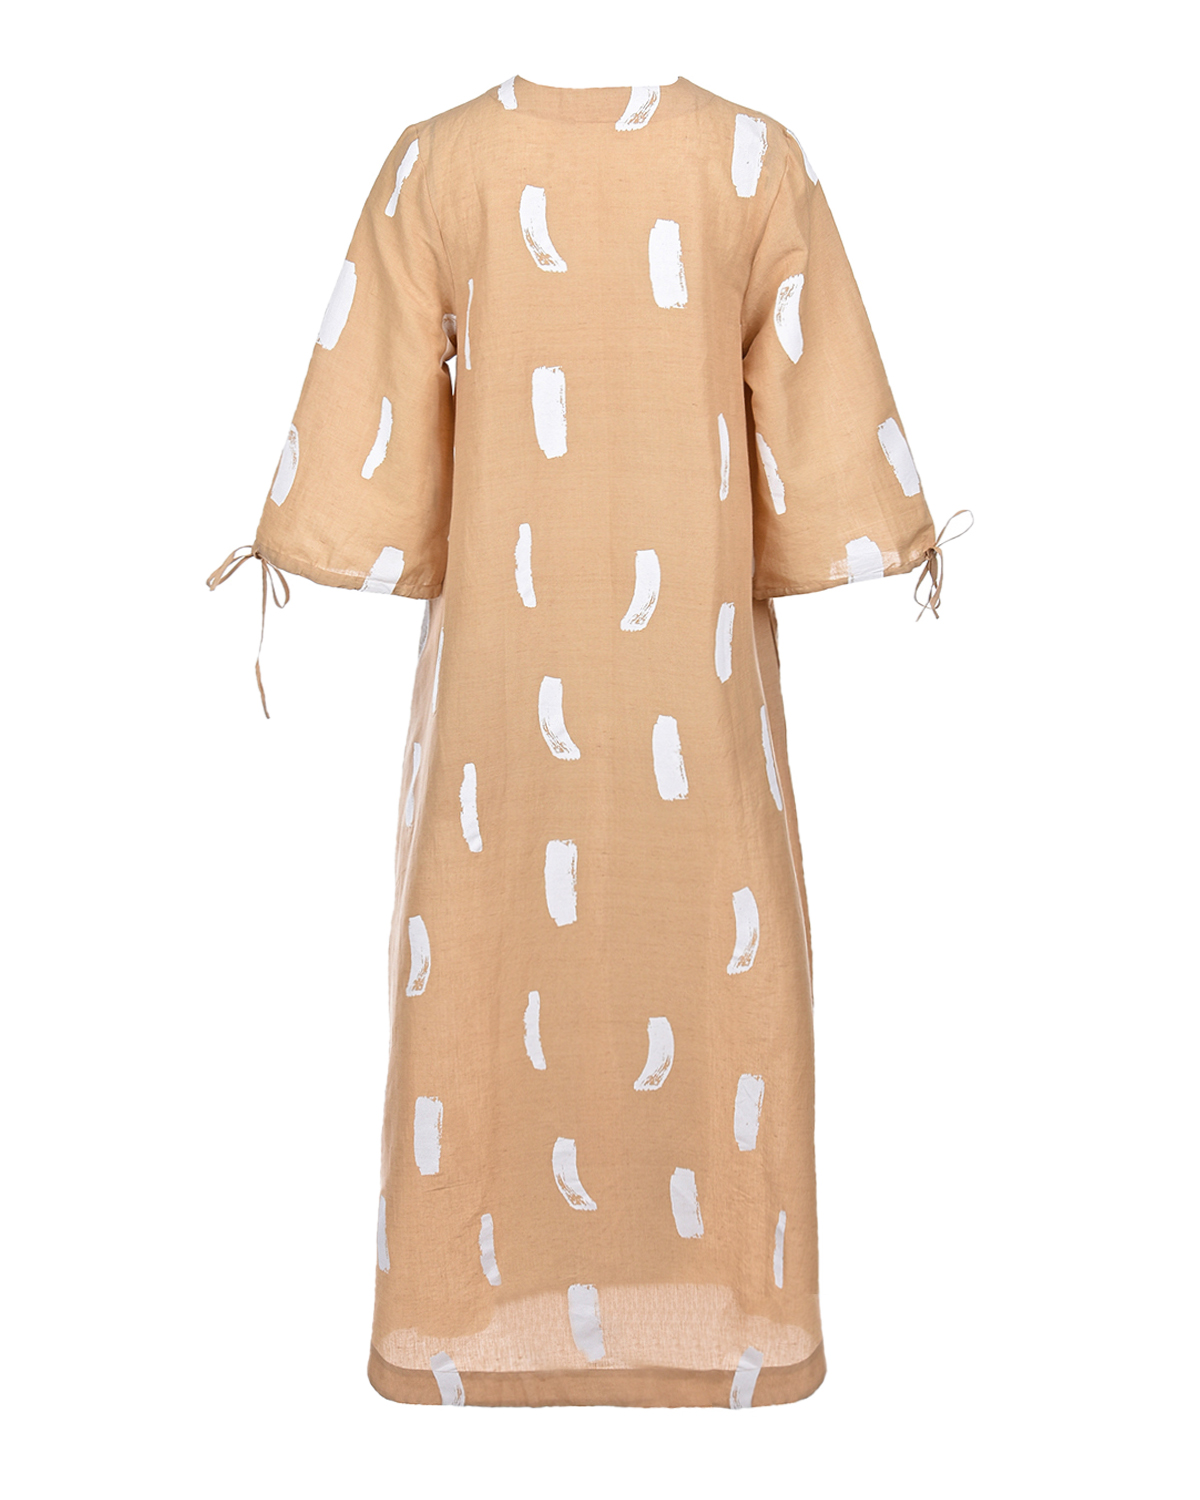 Бежевое платье с абстрактным принтом LOVE BIRDS, размер 40, цвет бежевый - фото 5